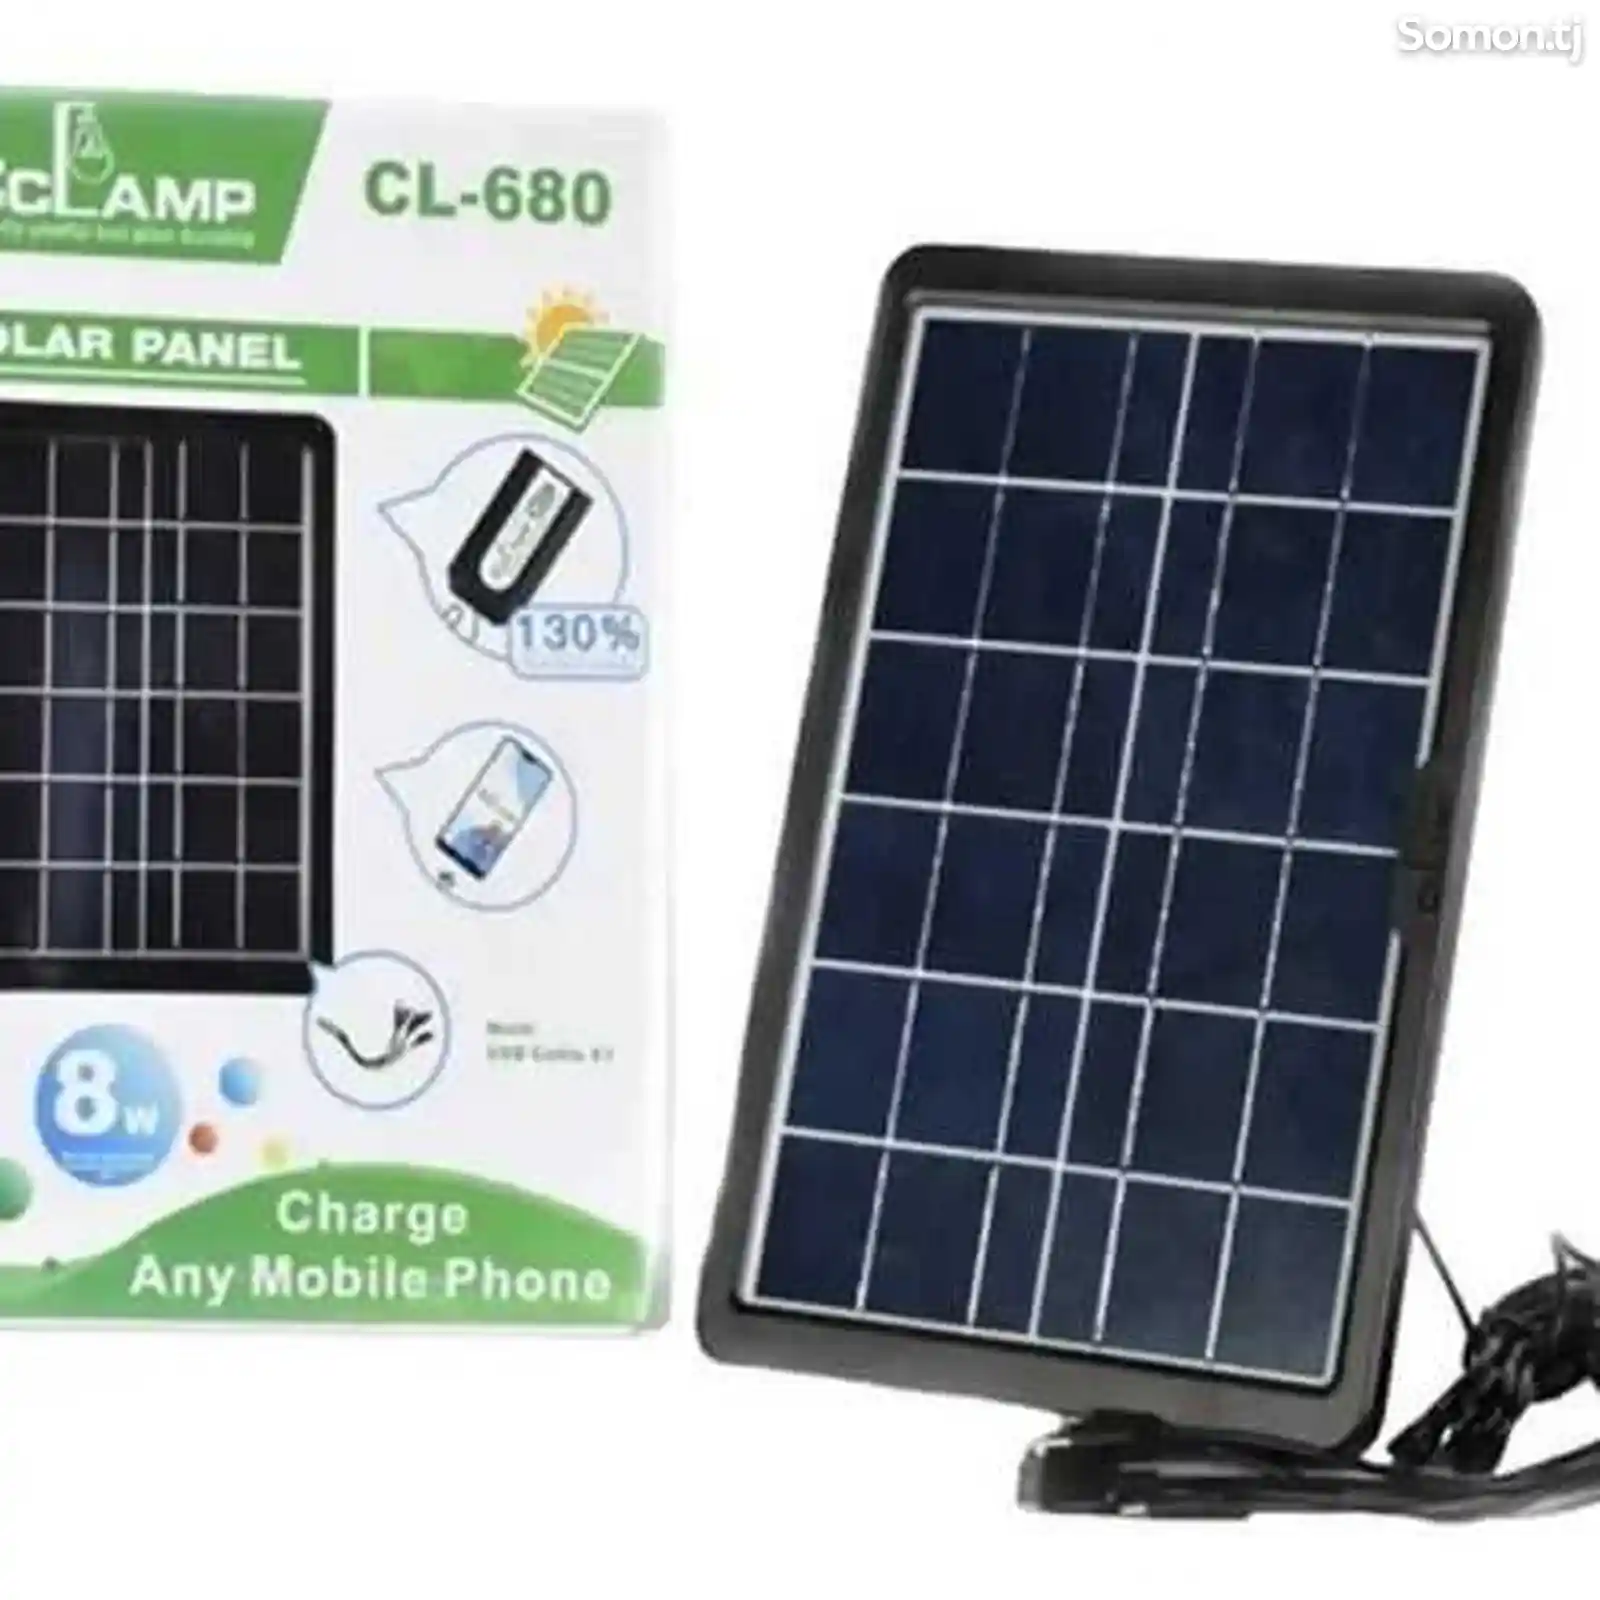 Солнечная панель Solar panel 8w cl680-1